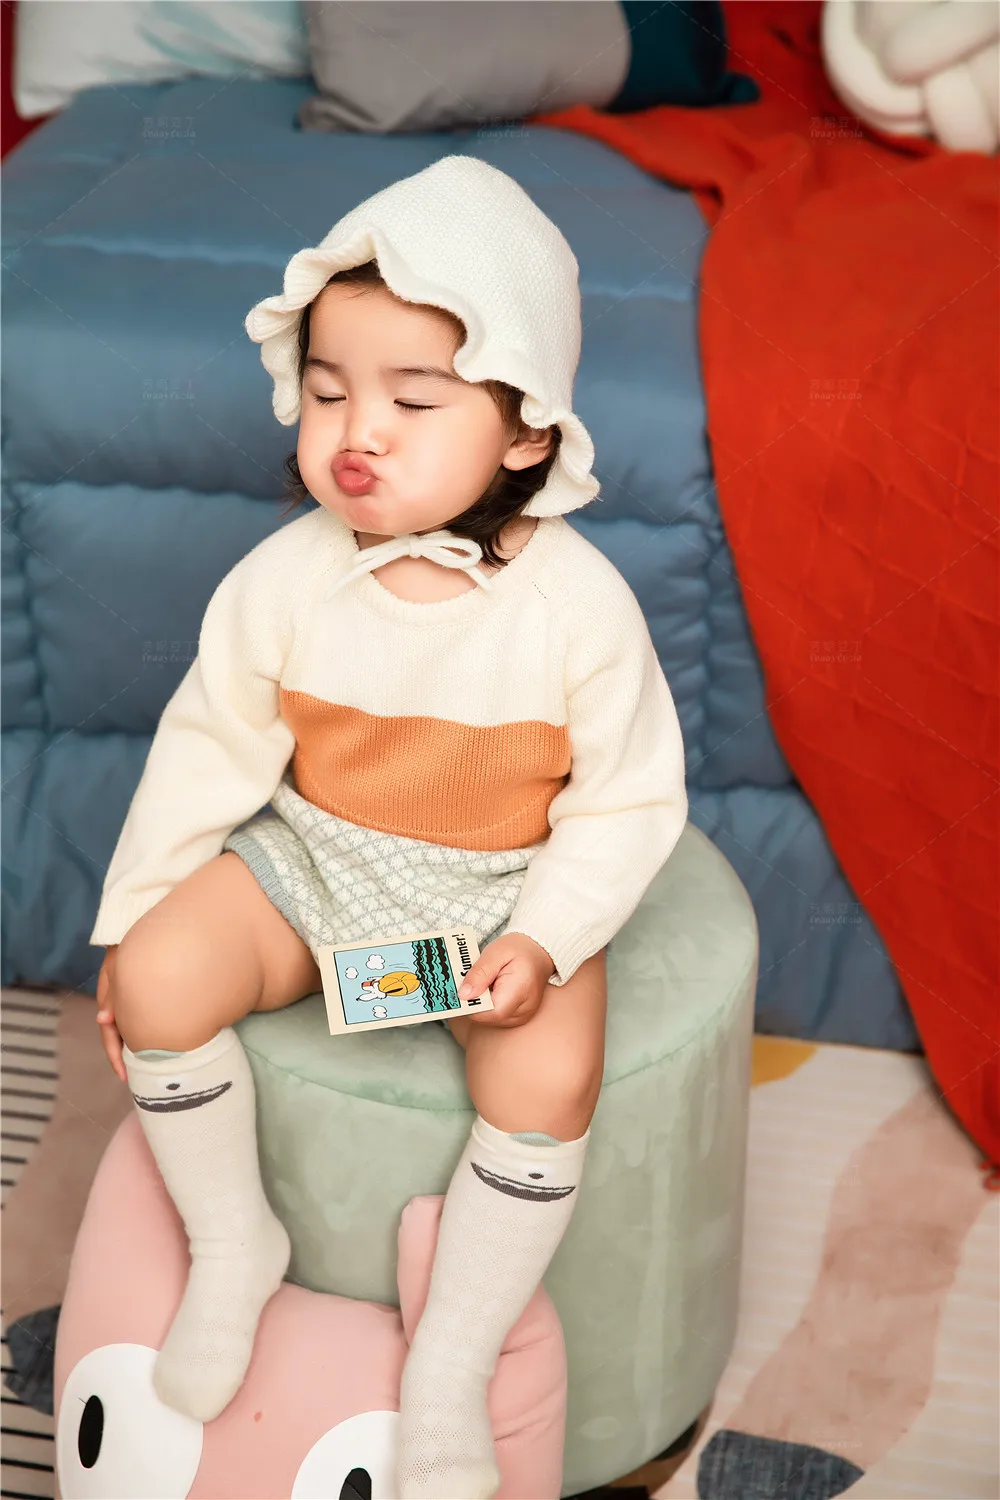 芳妮豆丁儿童摄影 迟到的宝宝生日照，送给她最好的礼物